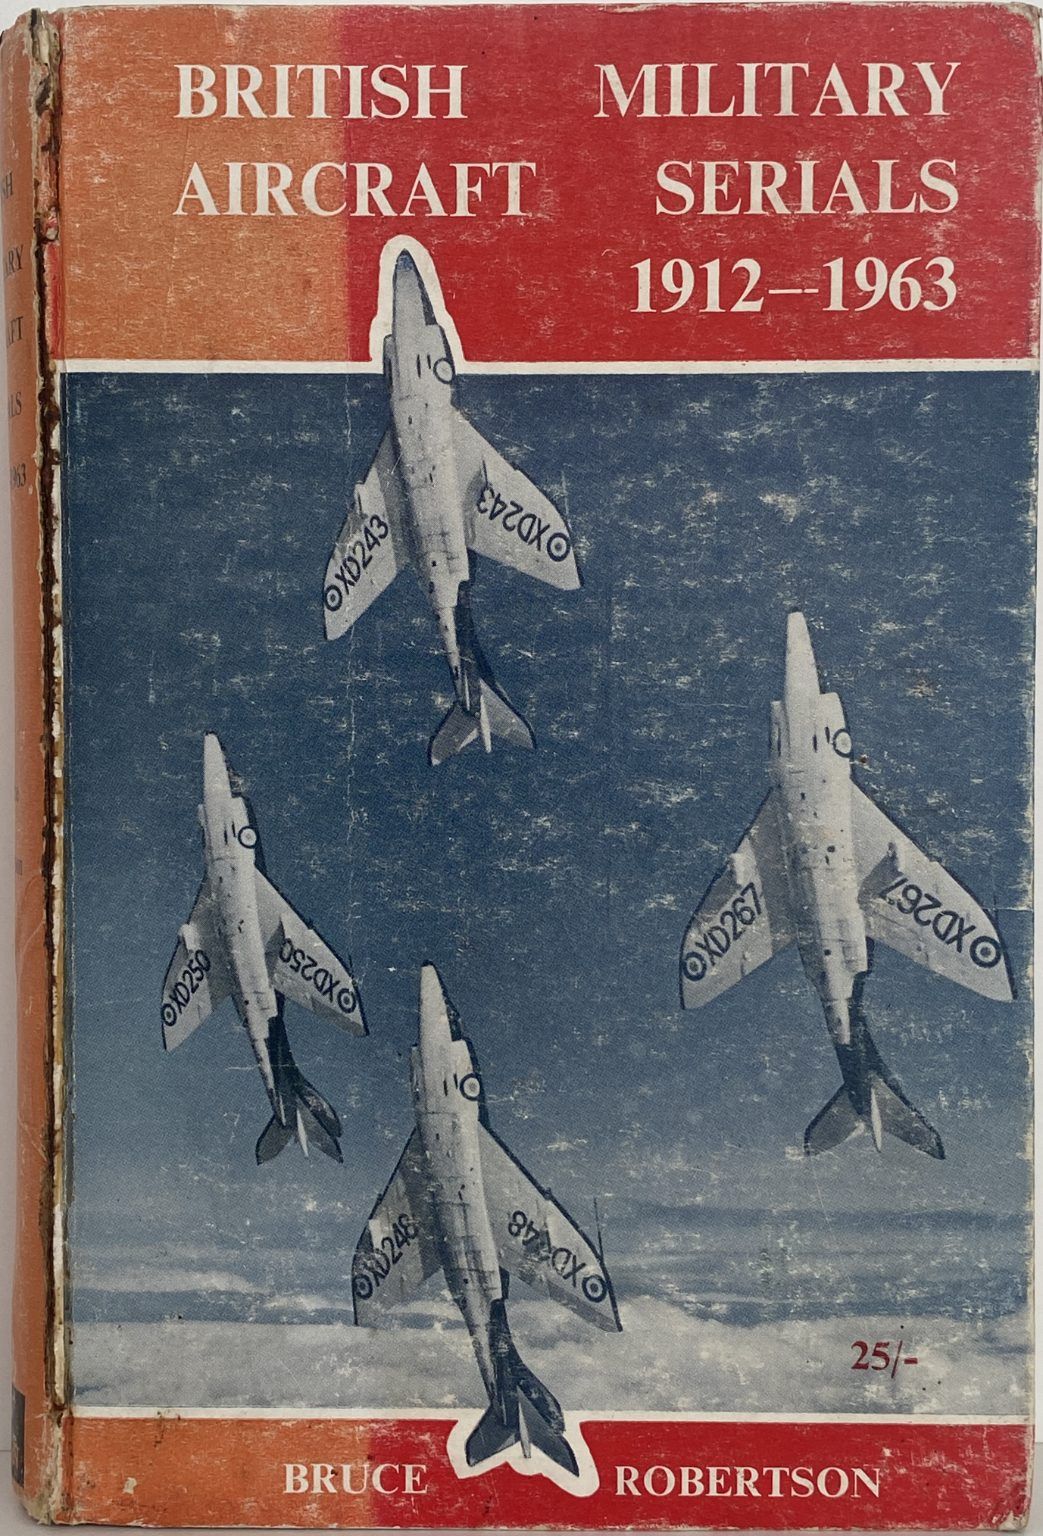 British Military Aircraft Serials 1912 - 1963